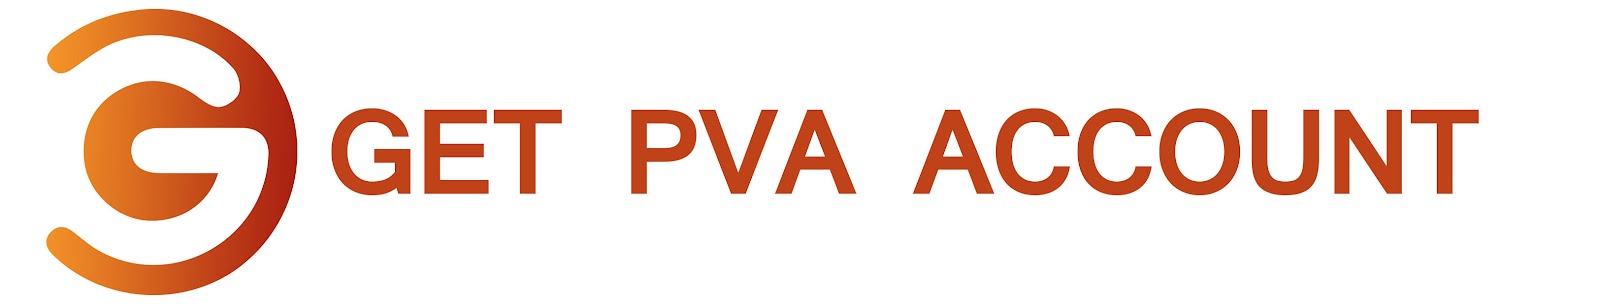 Get PVA Account